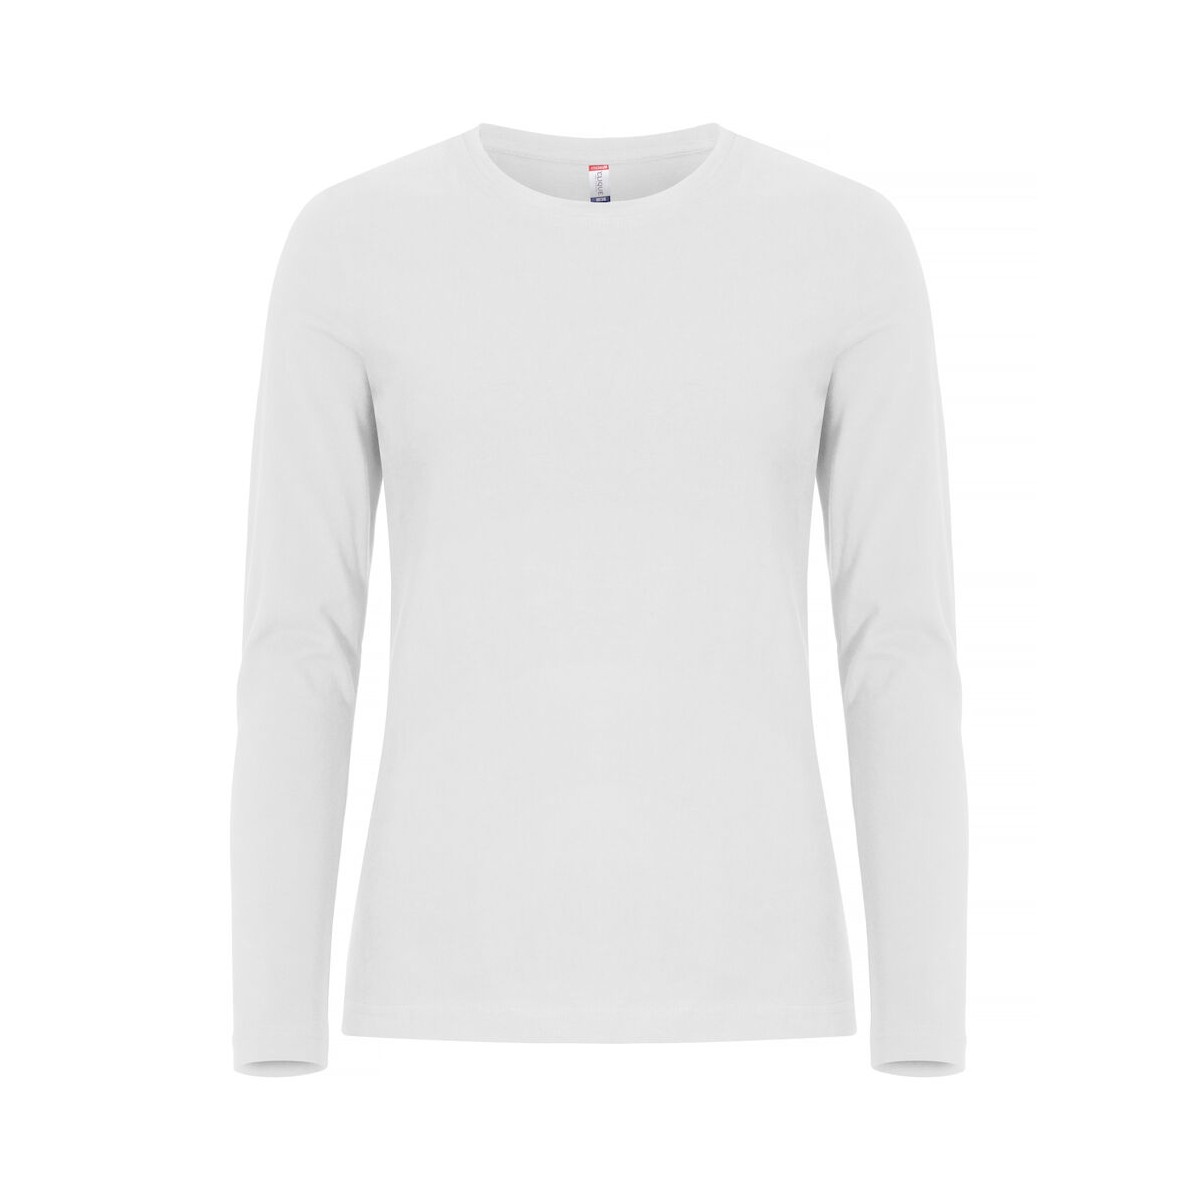 T-shirt manche longues - 100% coton ringspun - Coupe femme- CLIQUE - Couleur blanc - Personnalisable en petite quantité